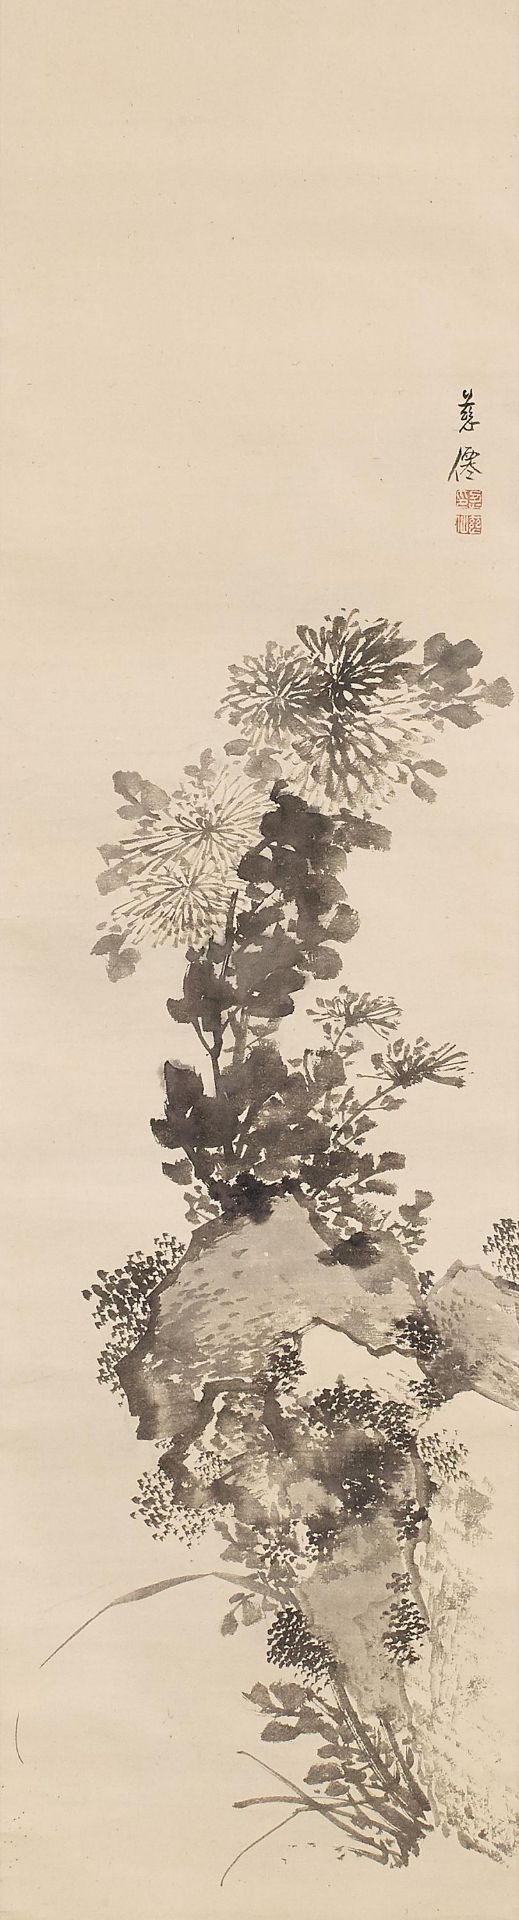 HÄNGEROLLE MIT CHRYSANTHEMEN. Japan. Edo-Zeit. Spätes 18. Jh. 110,7 x 30. Teils nasse Tusche auf